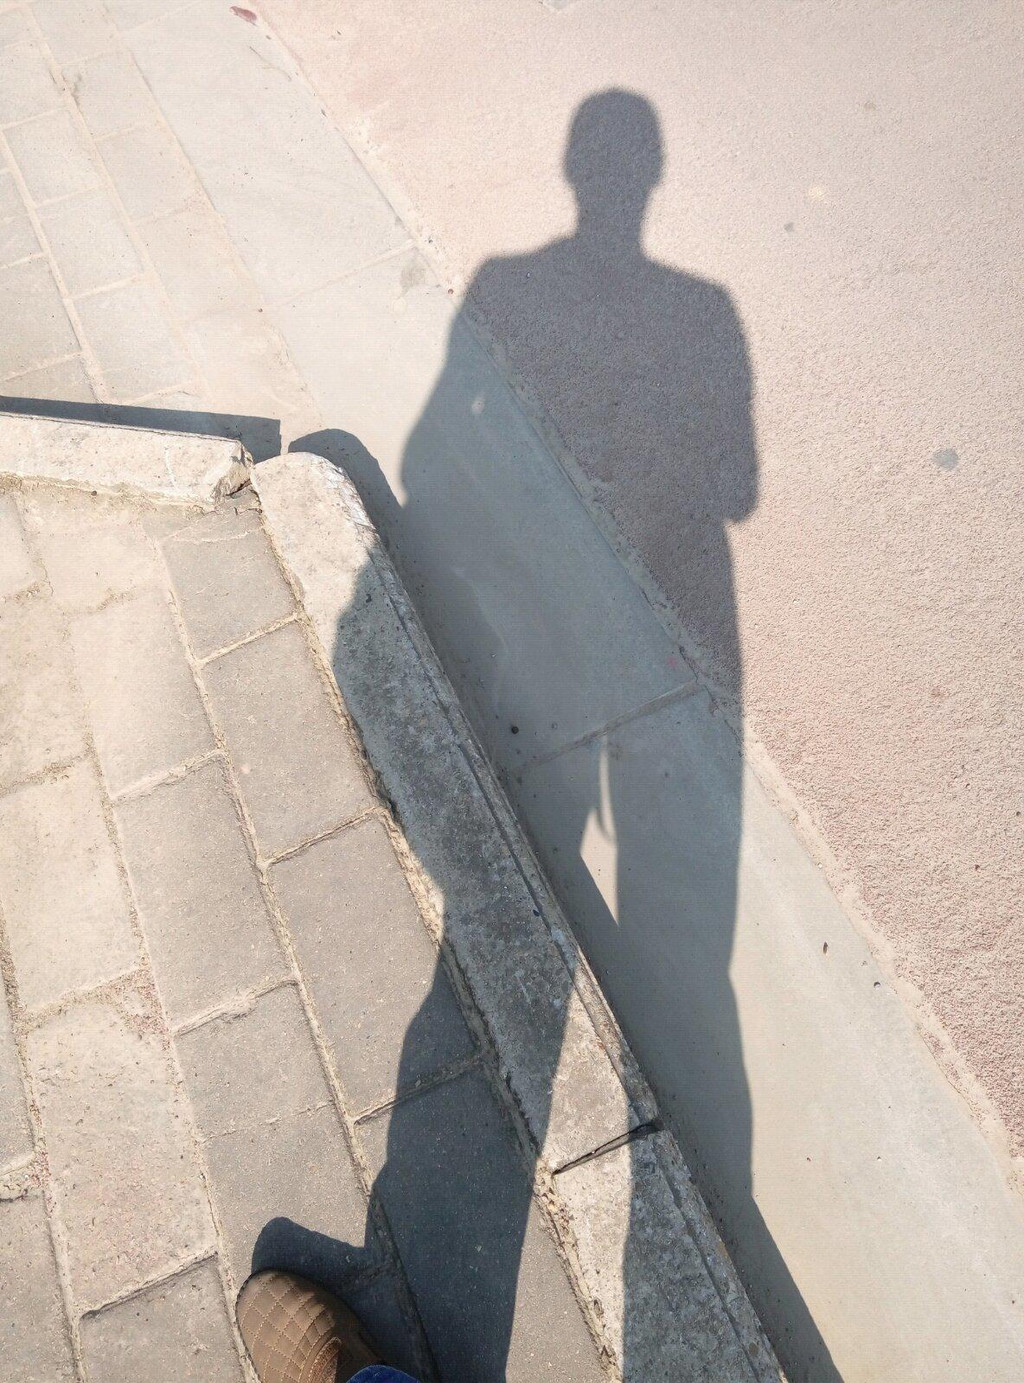                   一个人的影子